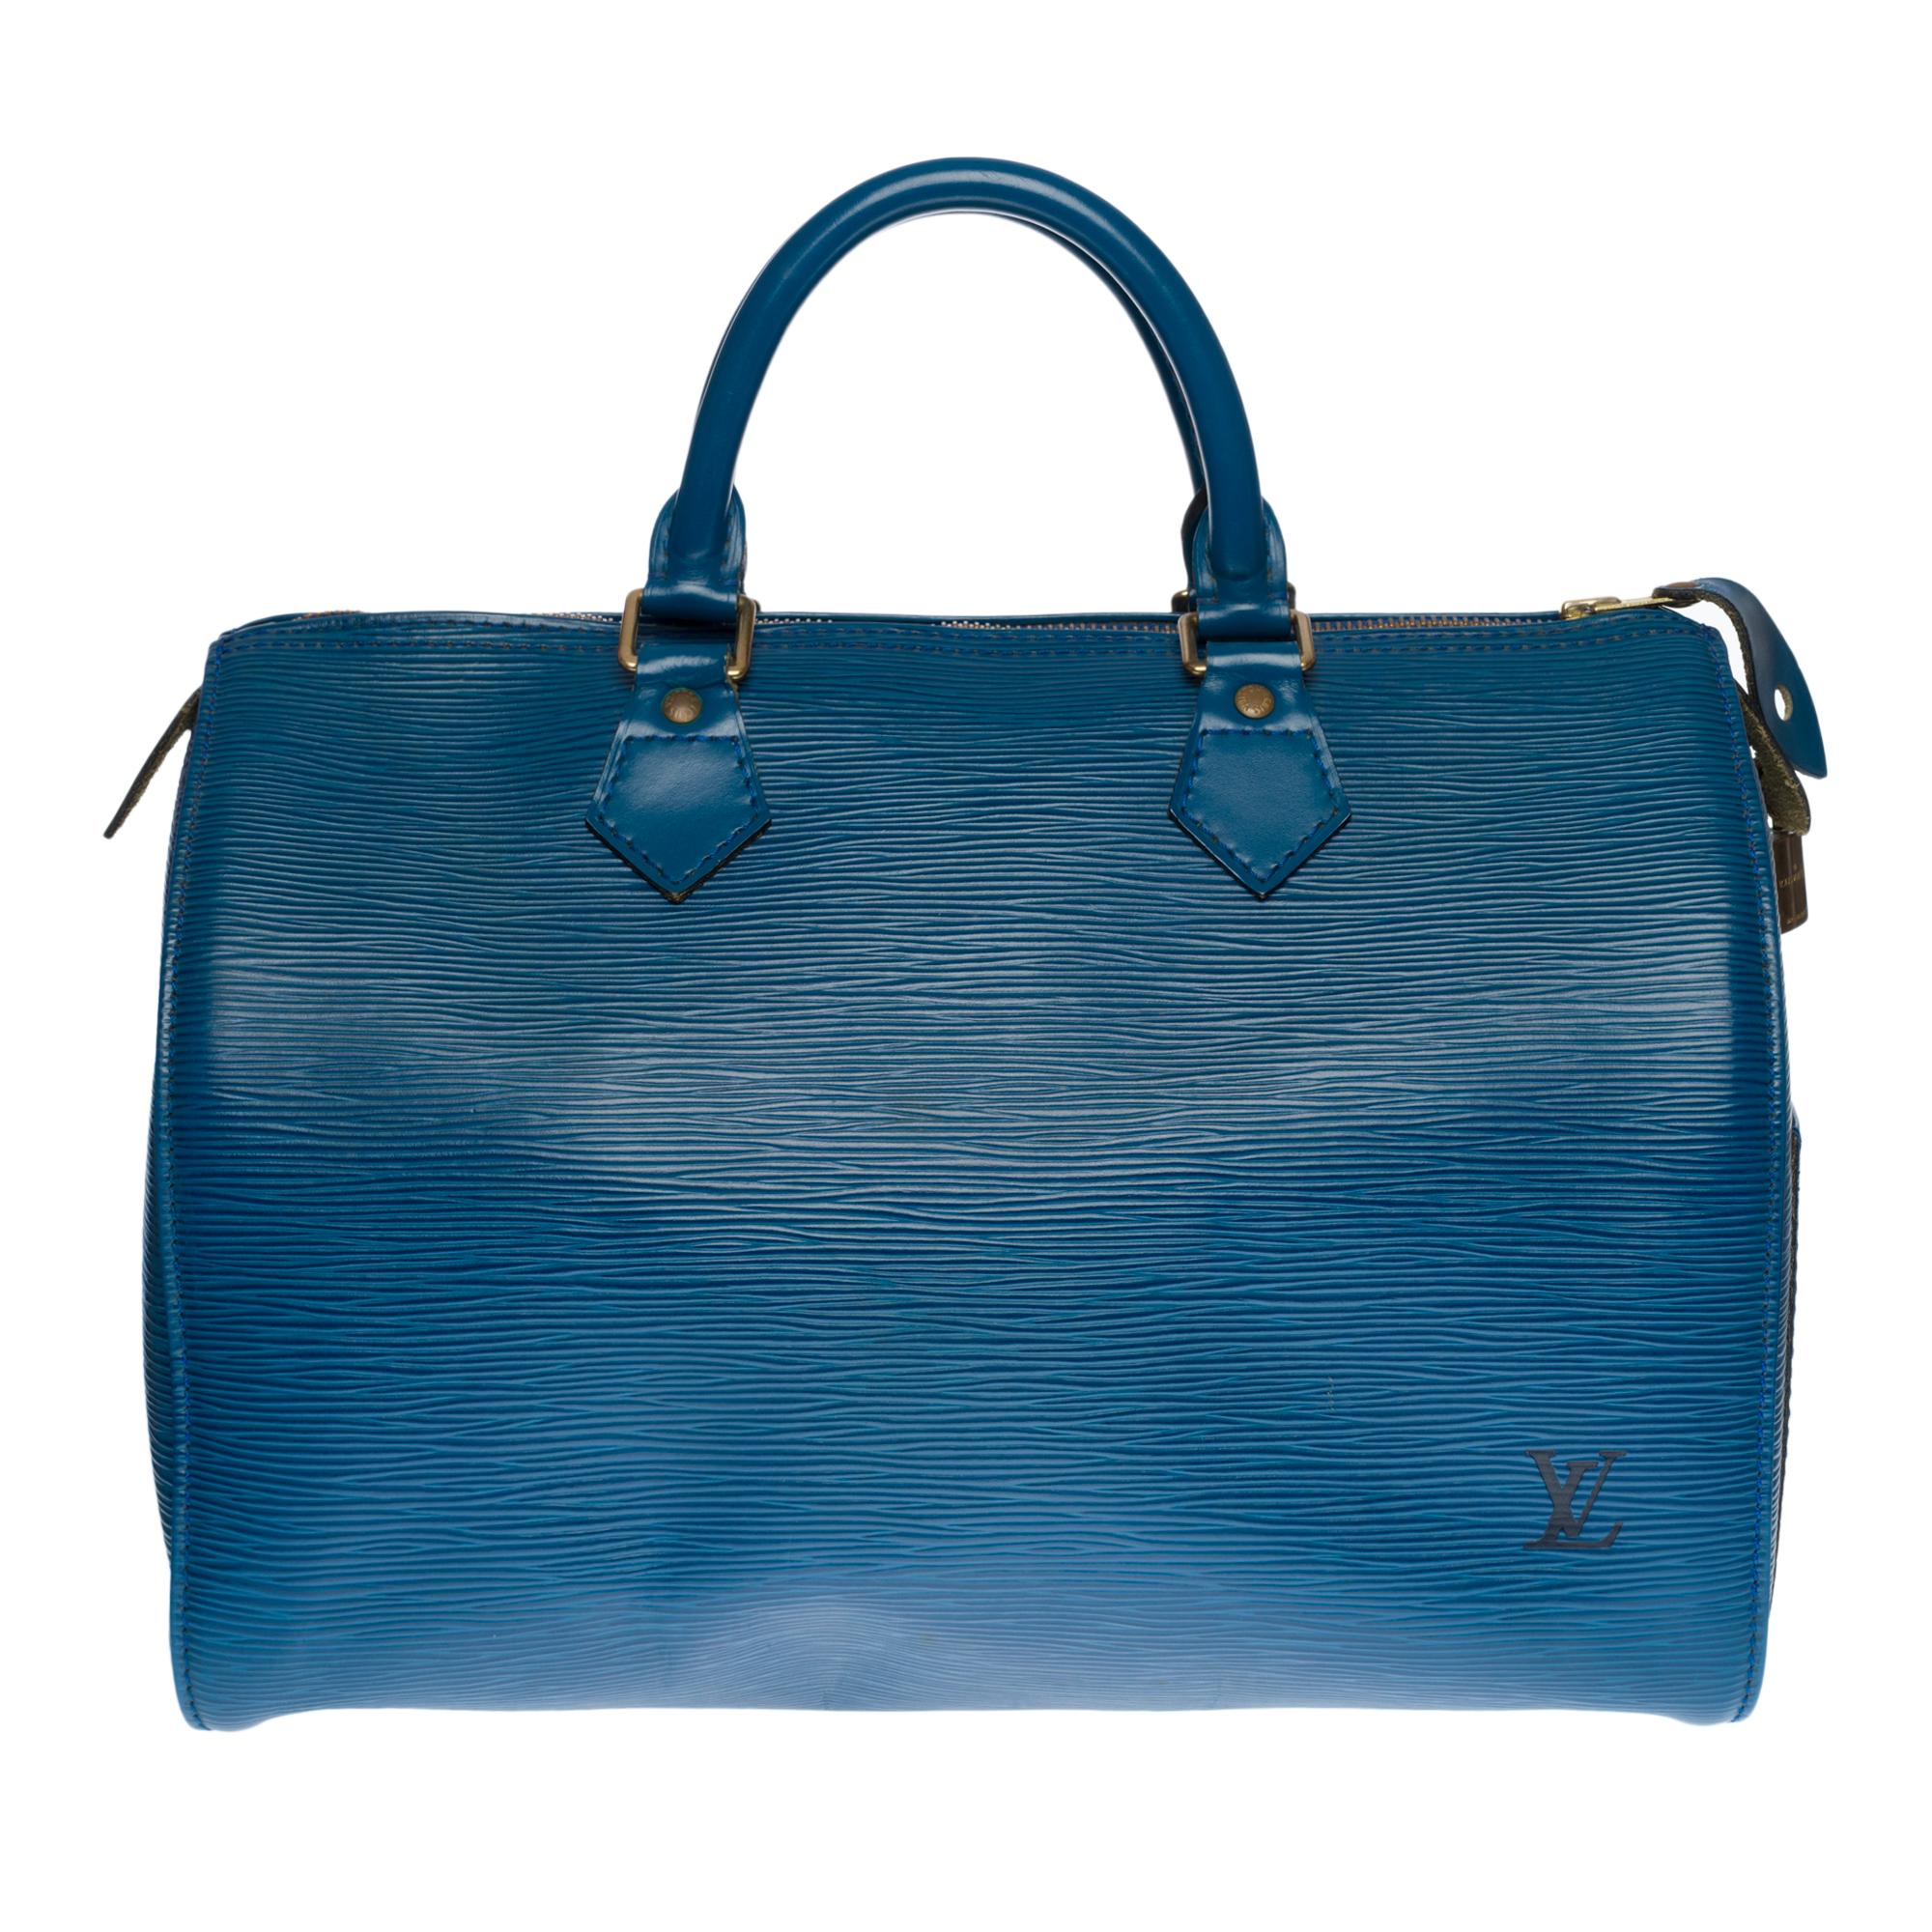 Prächtige Louis Vuitton Speedy 30 Handtasche aus blauem Epi-Leder, vergoldete Metallbeschläge, doppelter blauer Ledergriff zum Tragen in der Hand
Reißverschluss
Eine aufgesetzte Seitentasche
Interieur aus blauem Wildleder
Unterschrift: 